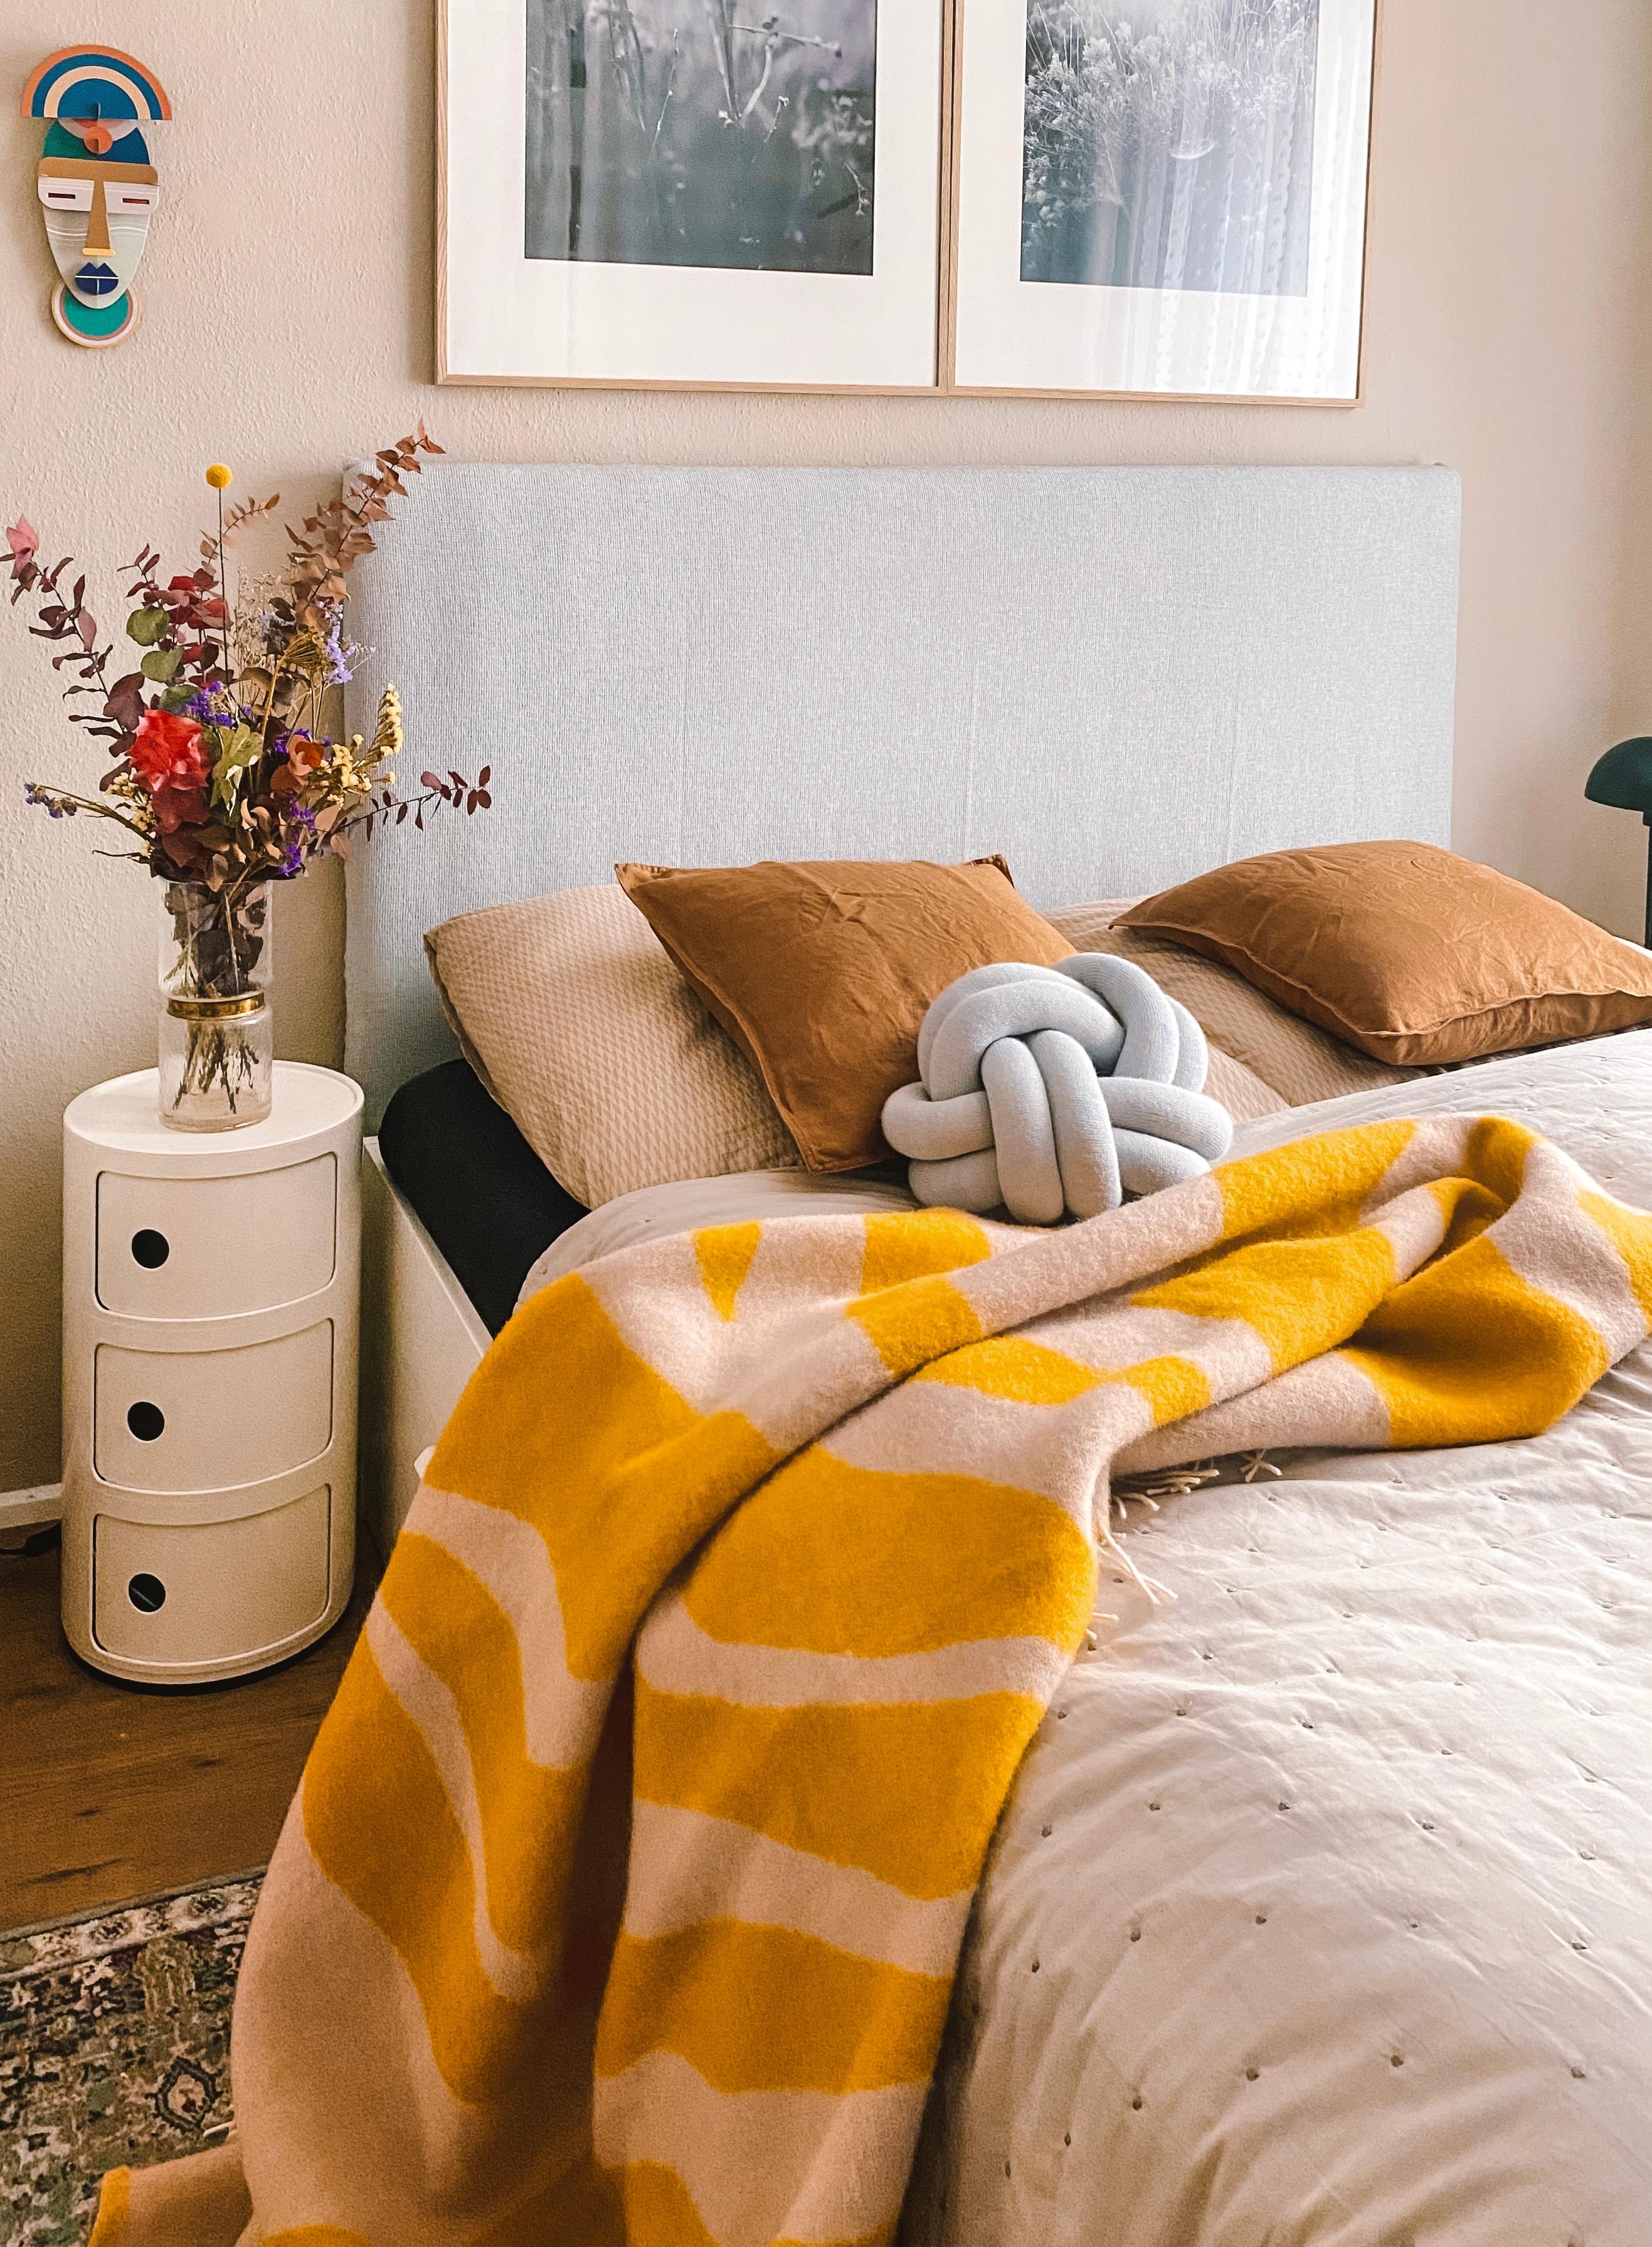 Kommt kuschelig & warm in den Tag! #schlafzimmer #farbe #orange #bett